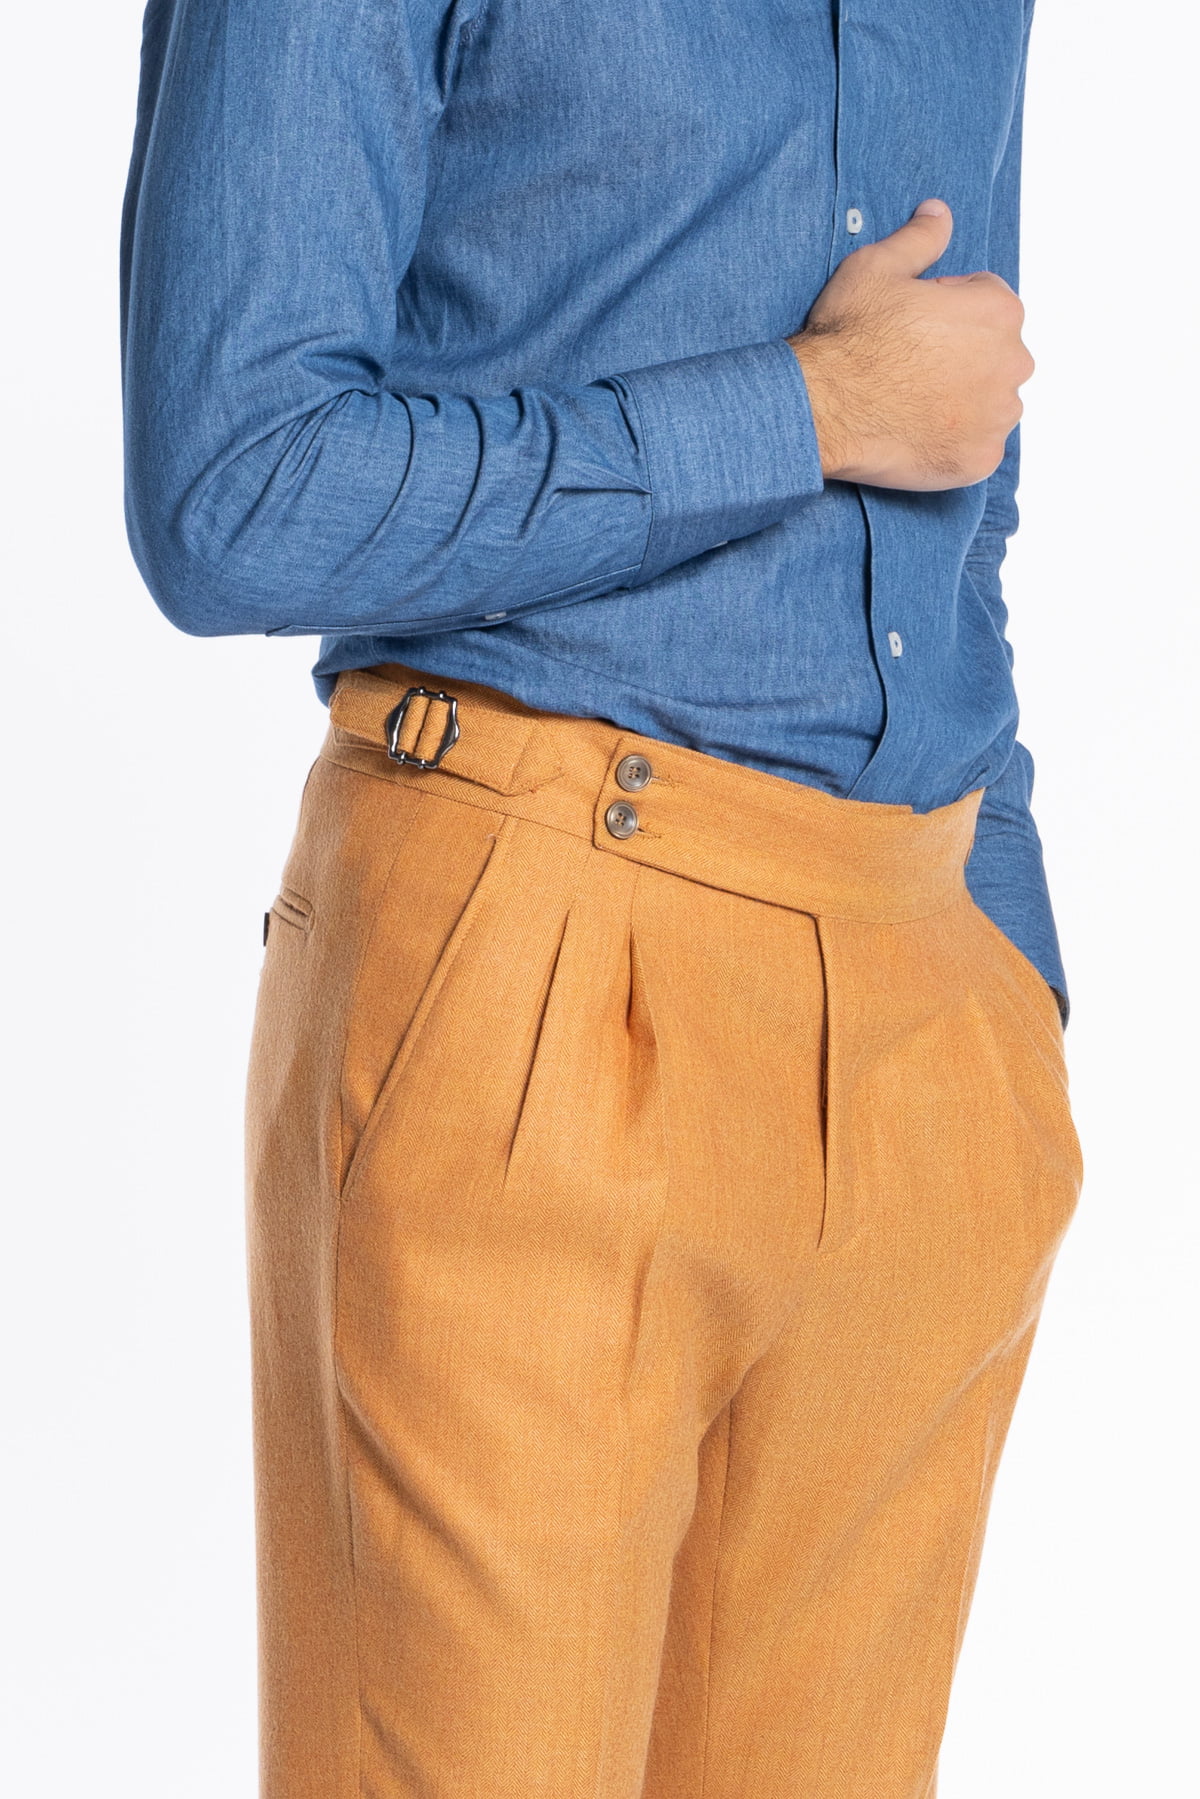 Pantalone uomo arancio spigato vita alta tasca america in lana flanella Holland & Sherry con doppia pinces e fibbie laterali regolabili